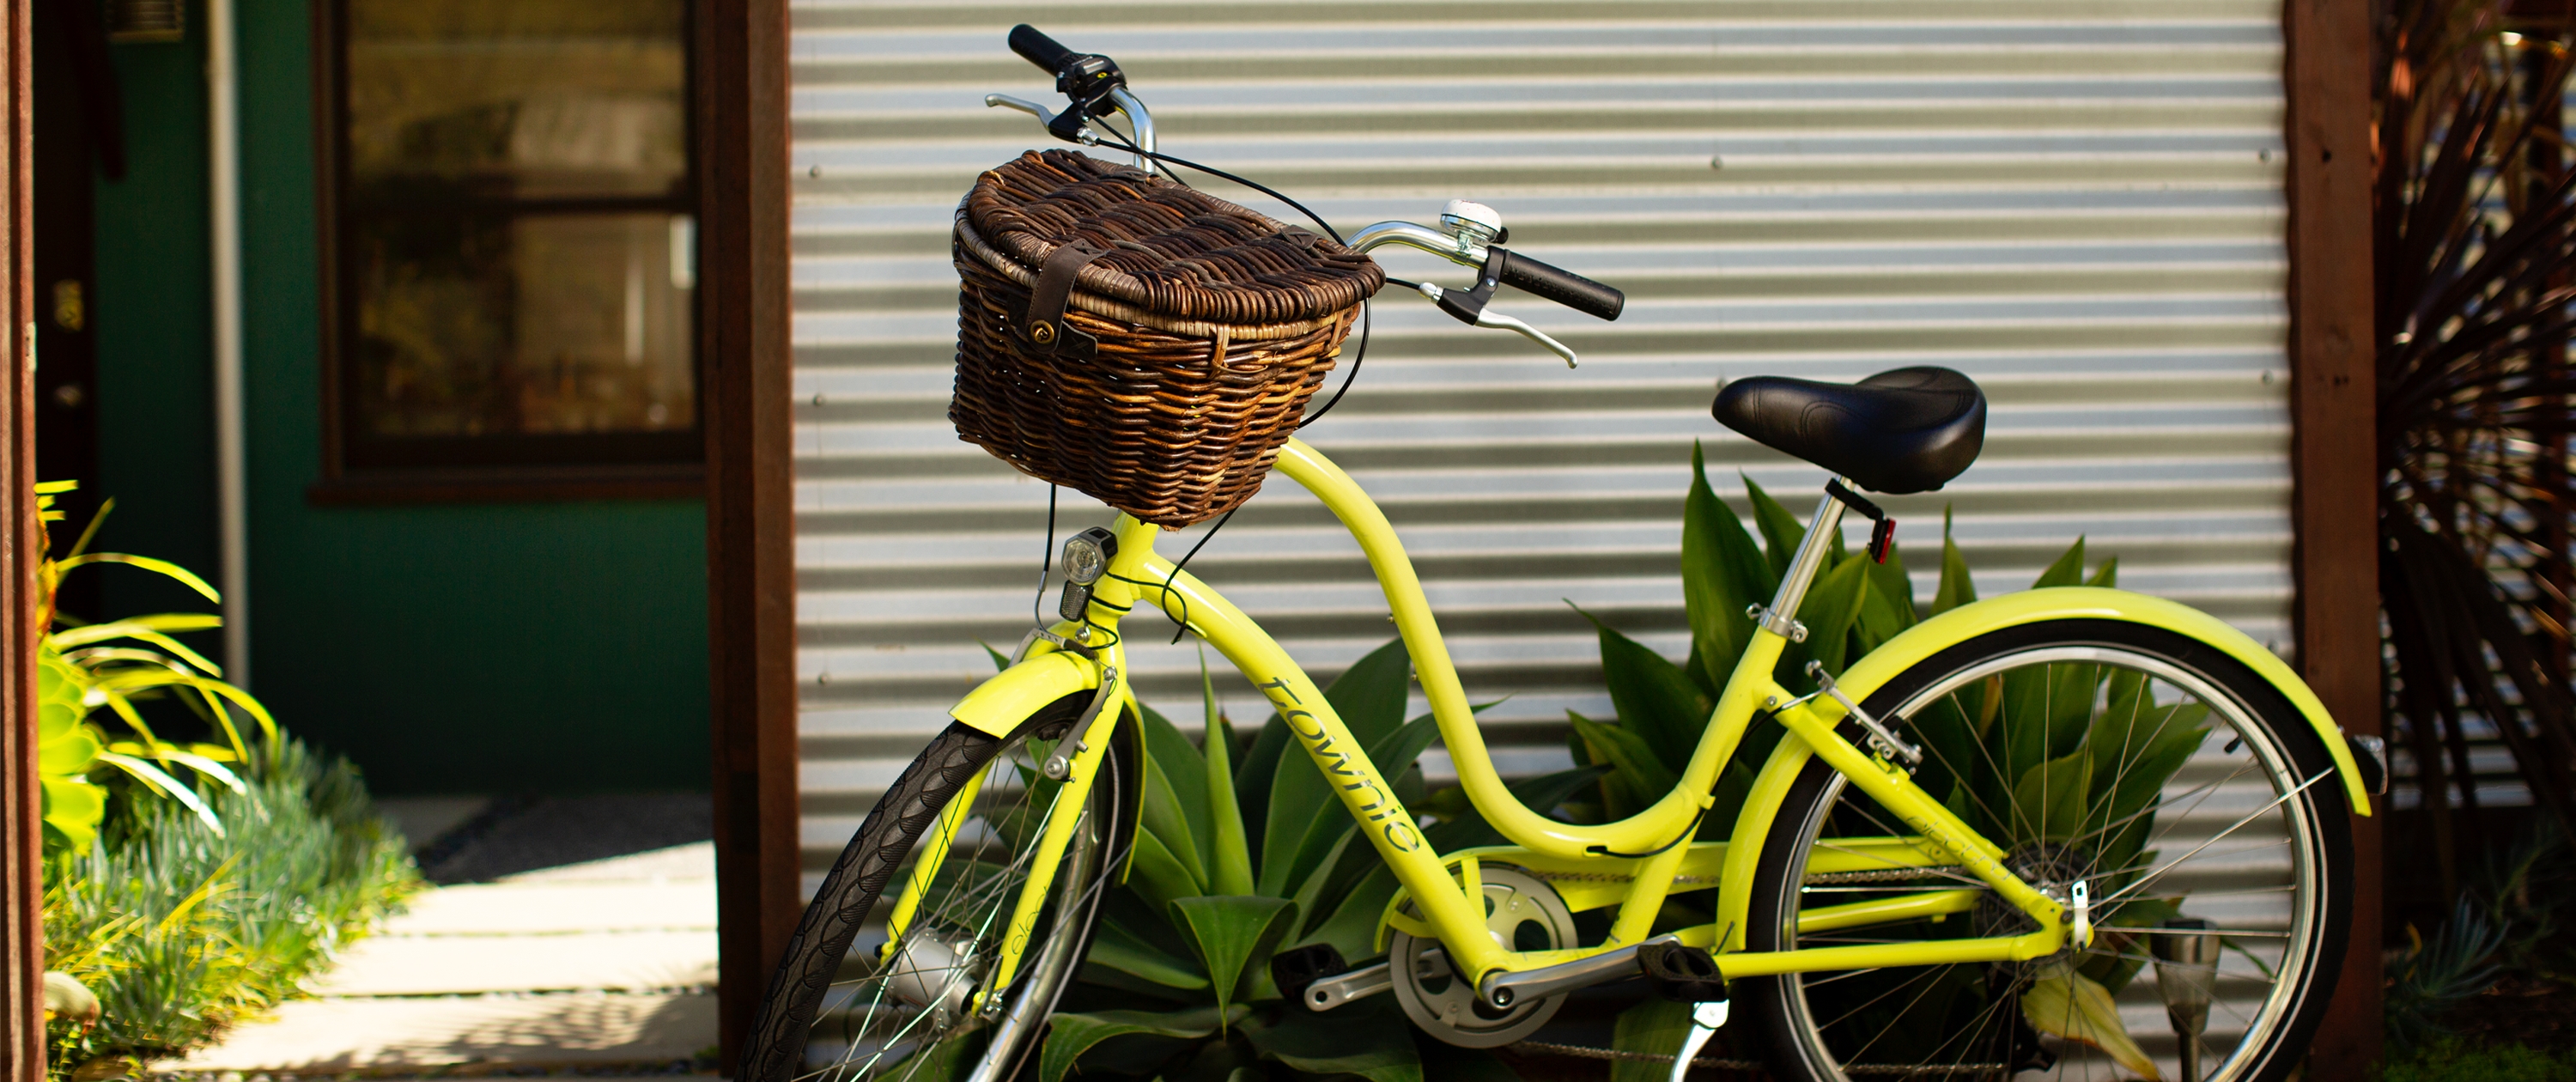 bike baskets for cruiser bikes